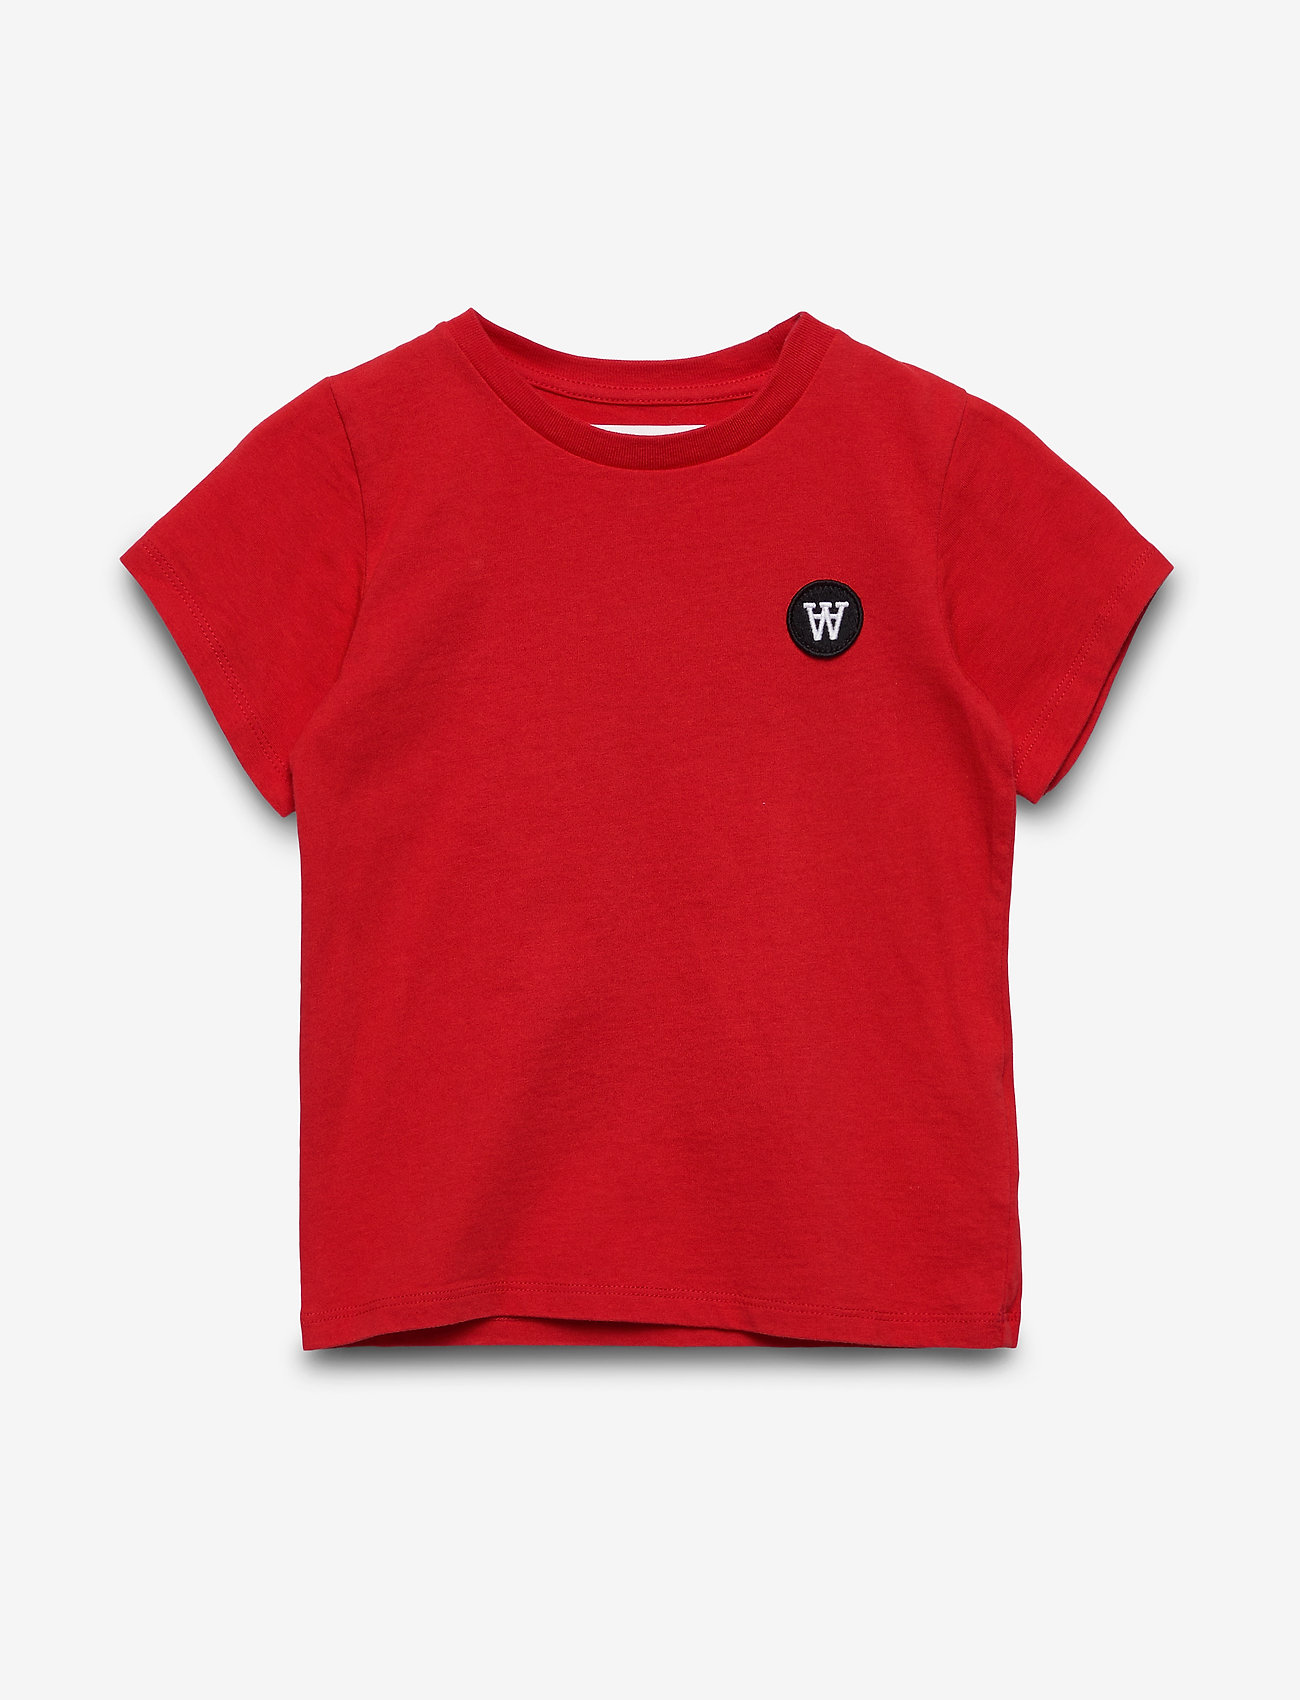 Wood Wood - Ola kids T-shirt GOTS - red - 0